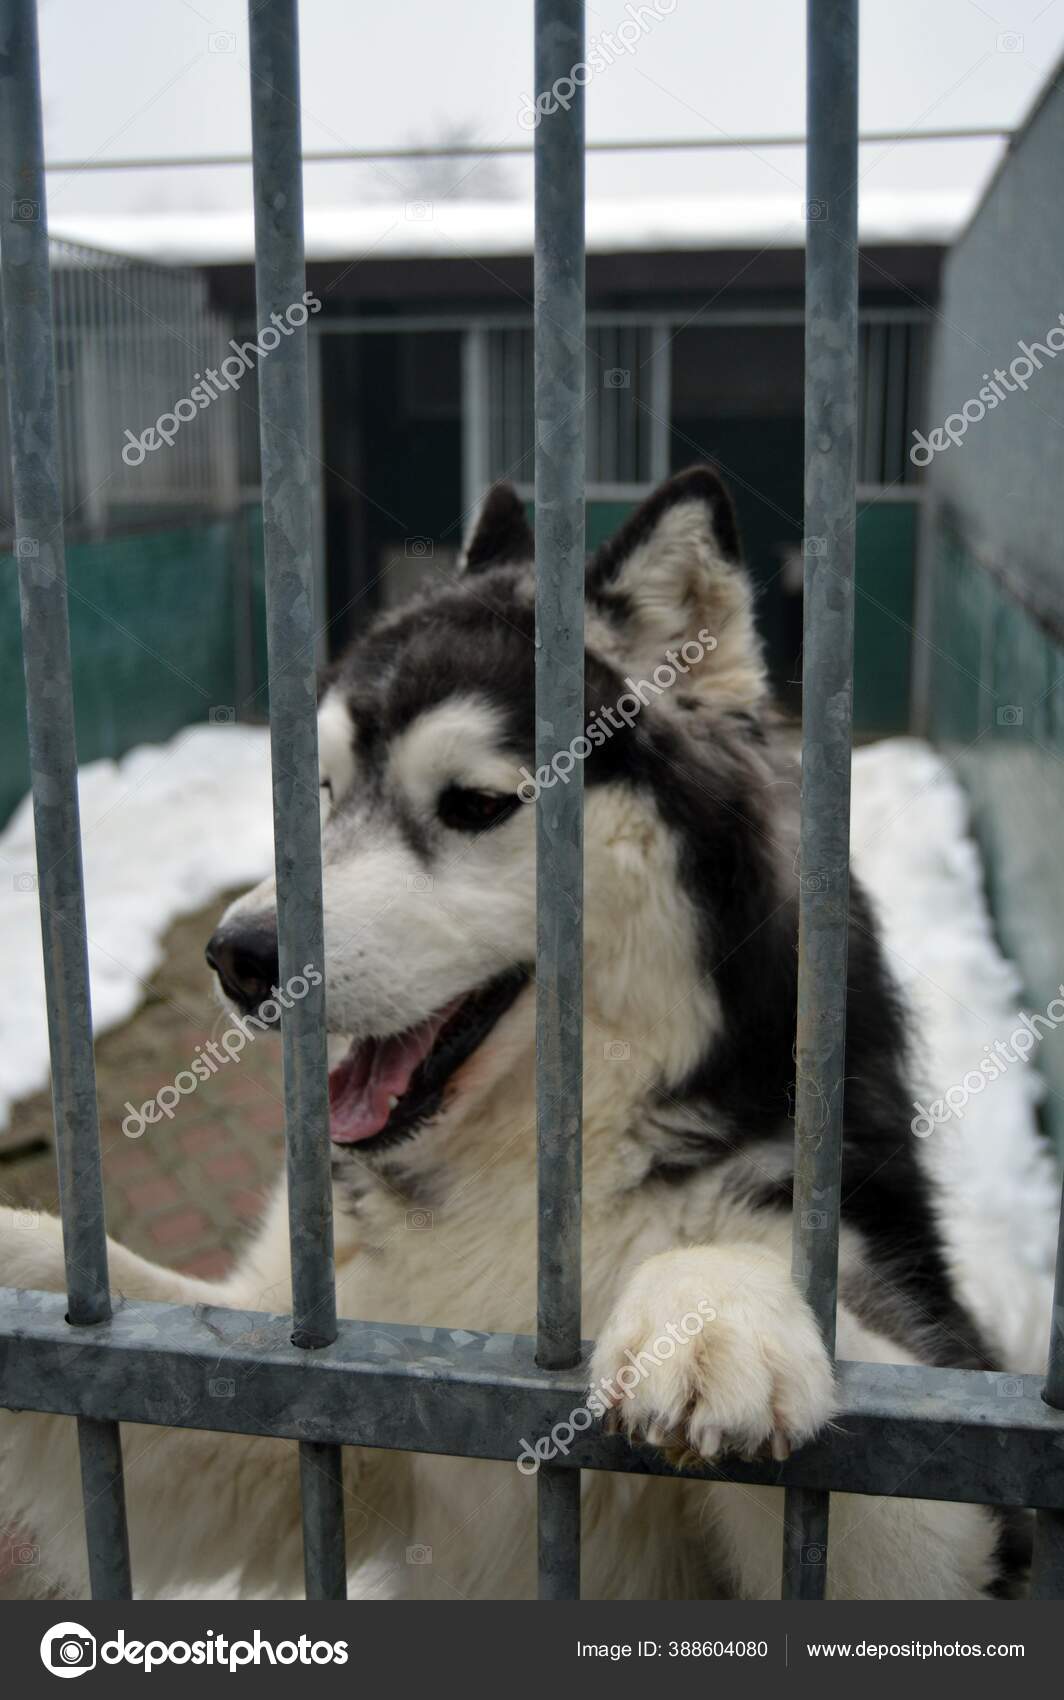 siberian husky animal shelter